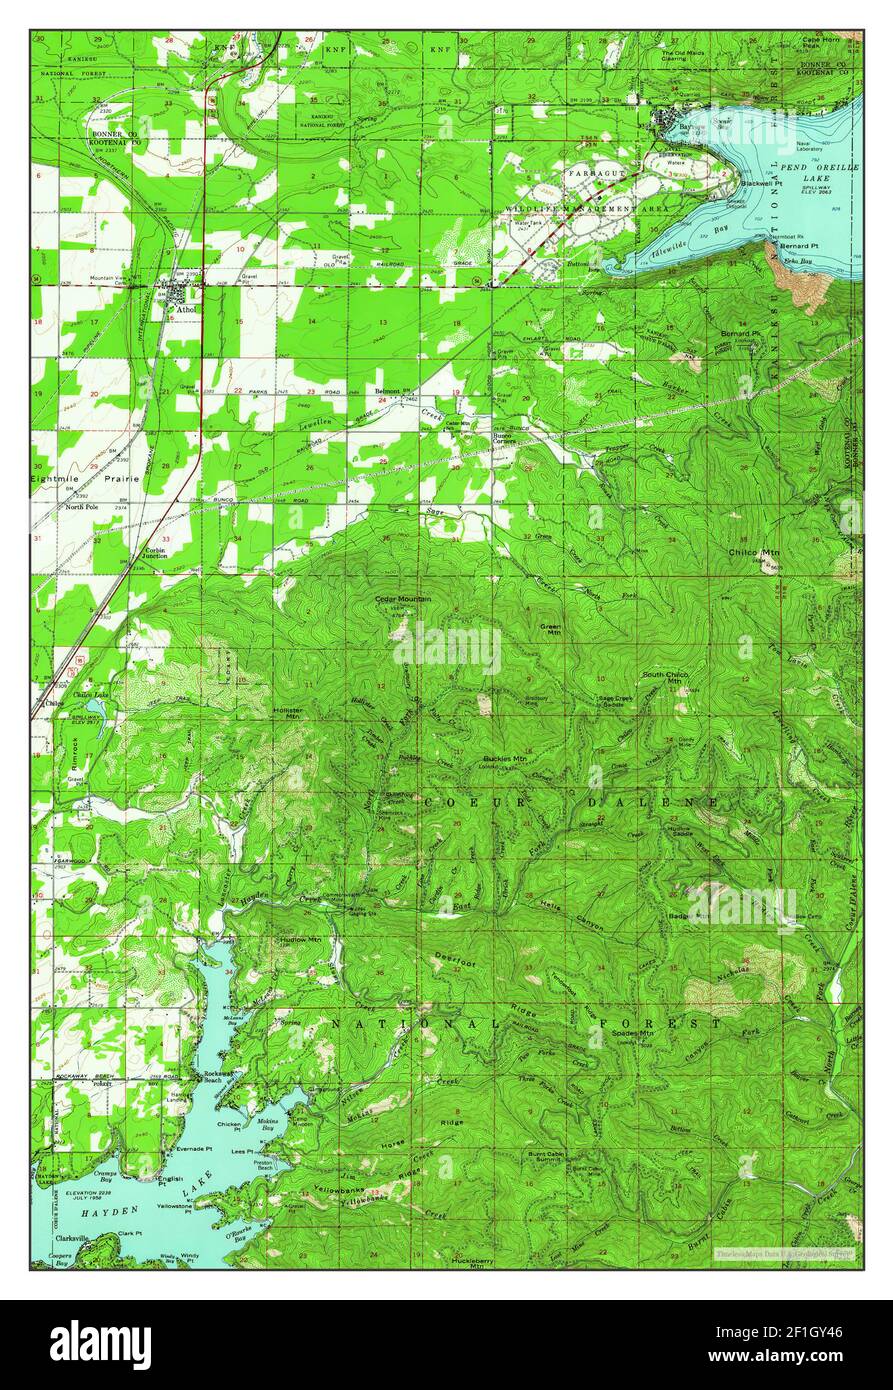 Athol, Idaho, map 1961, 1:62500, United States of America by Timeless Maps, data U.S. Geological Survey Stock Photo